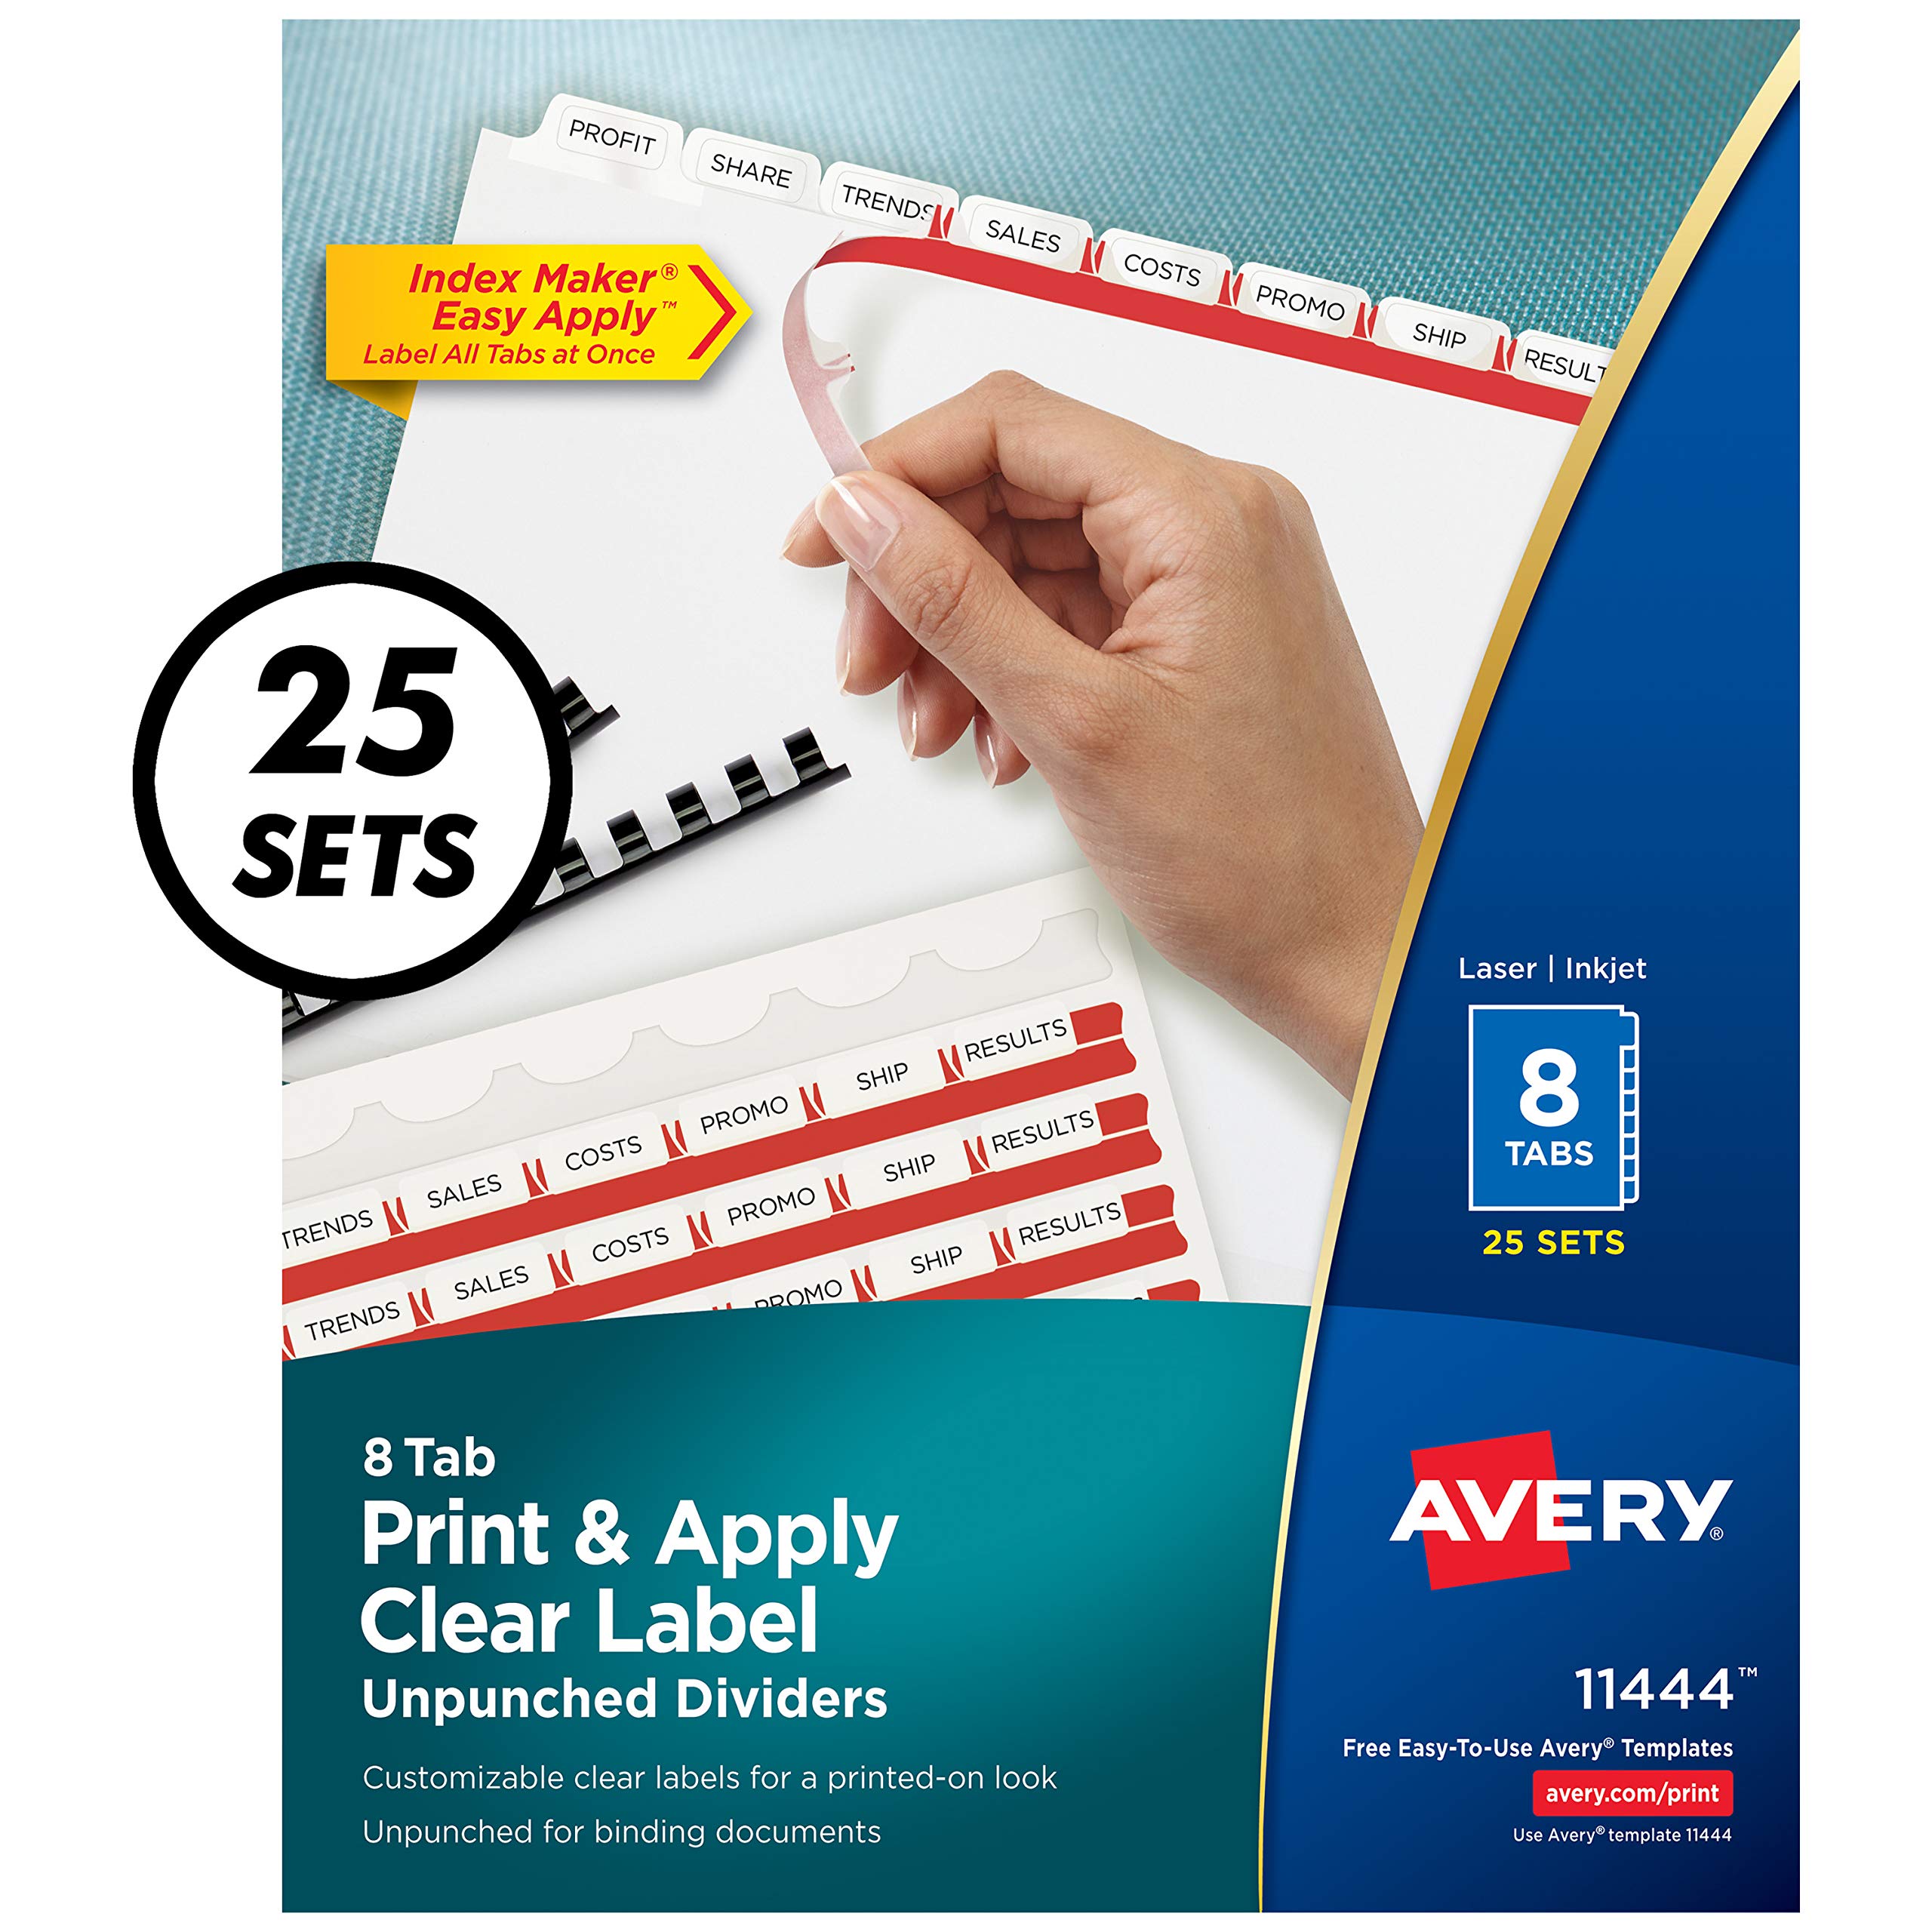 Avery 8タブ パンチなしバインダーディバイダー、簡単に印刷して貼れる透明ラベルストリップ、インデックスメ...